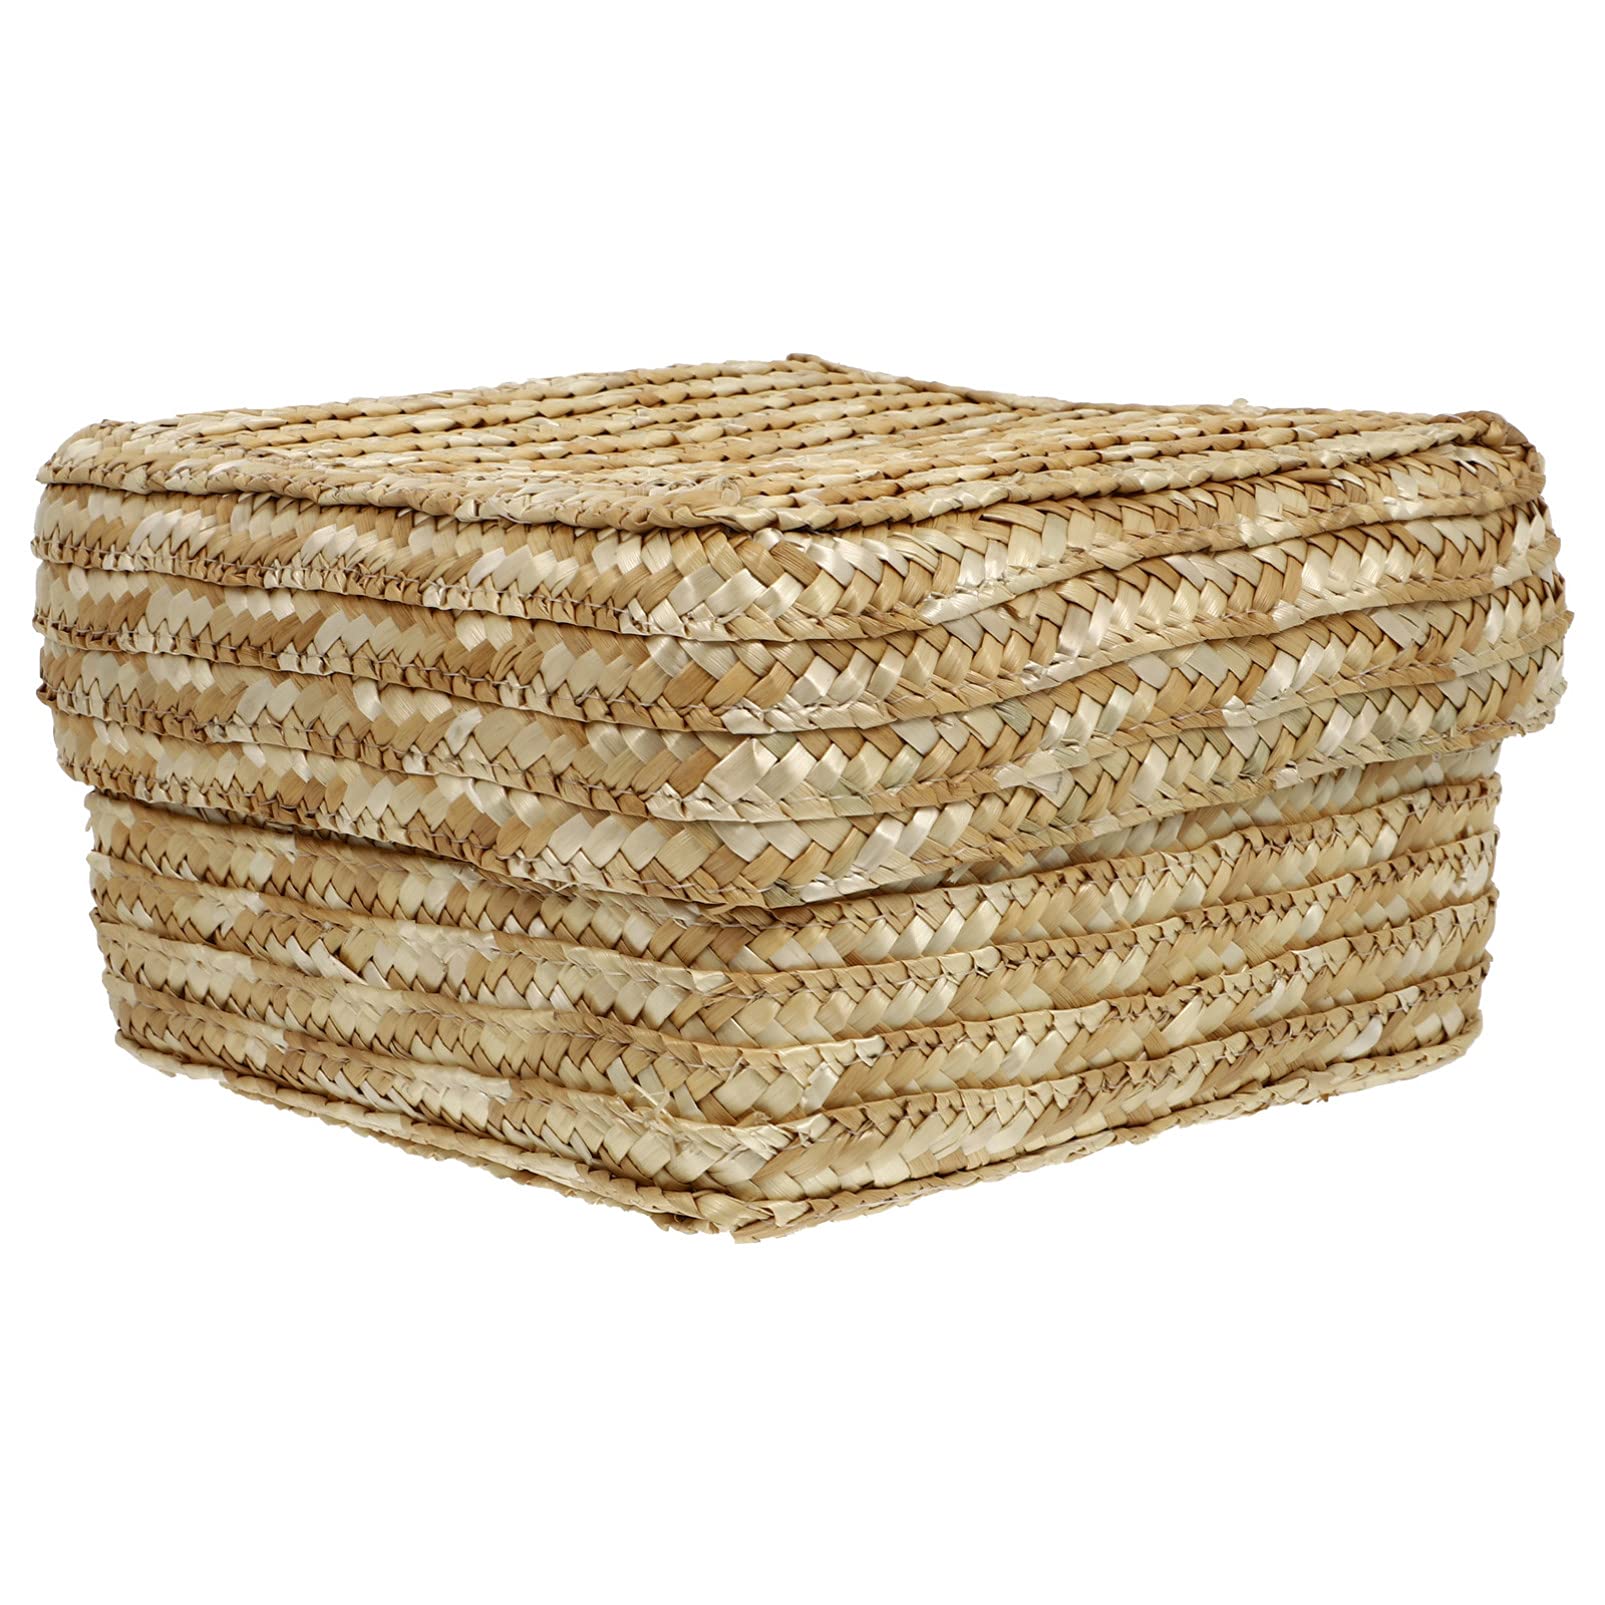 DOITOOL Wicker Storage Baskets 1pc Straw Storage Basket Wicker Child Cosmetic Wedding Wedding Basket